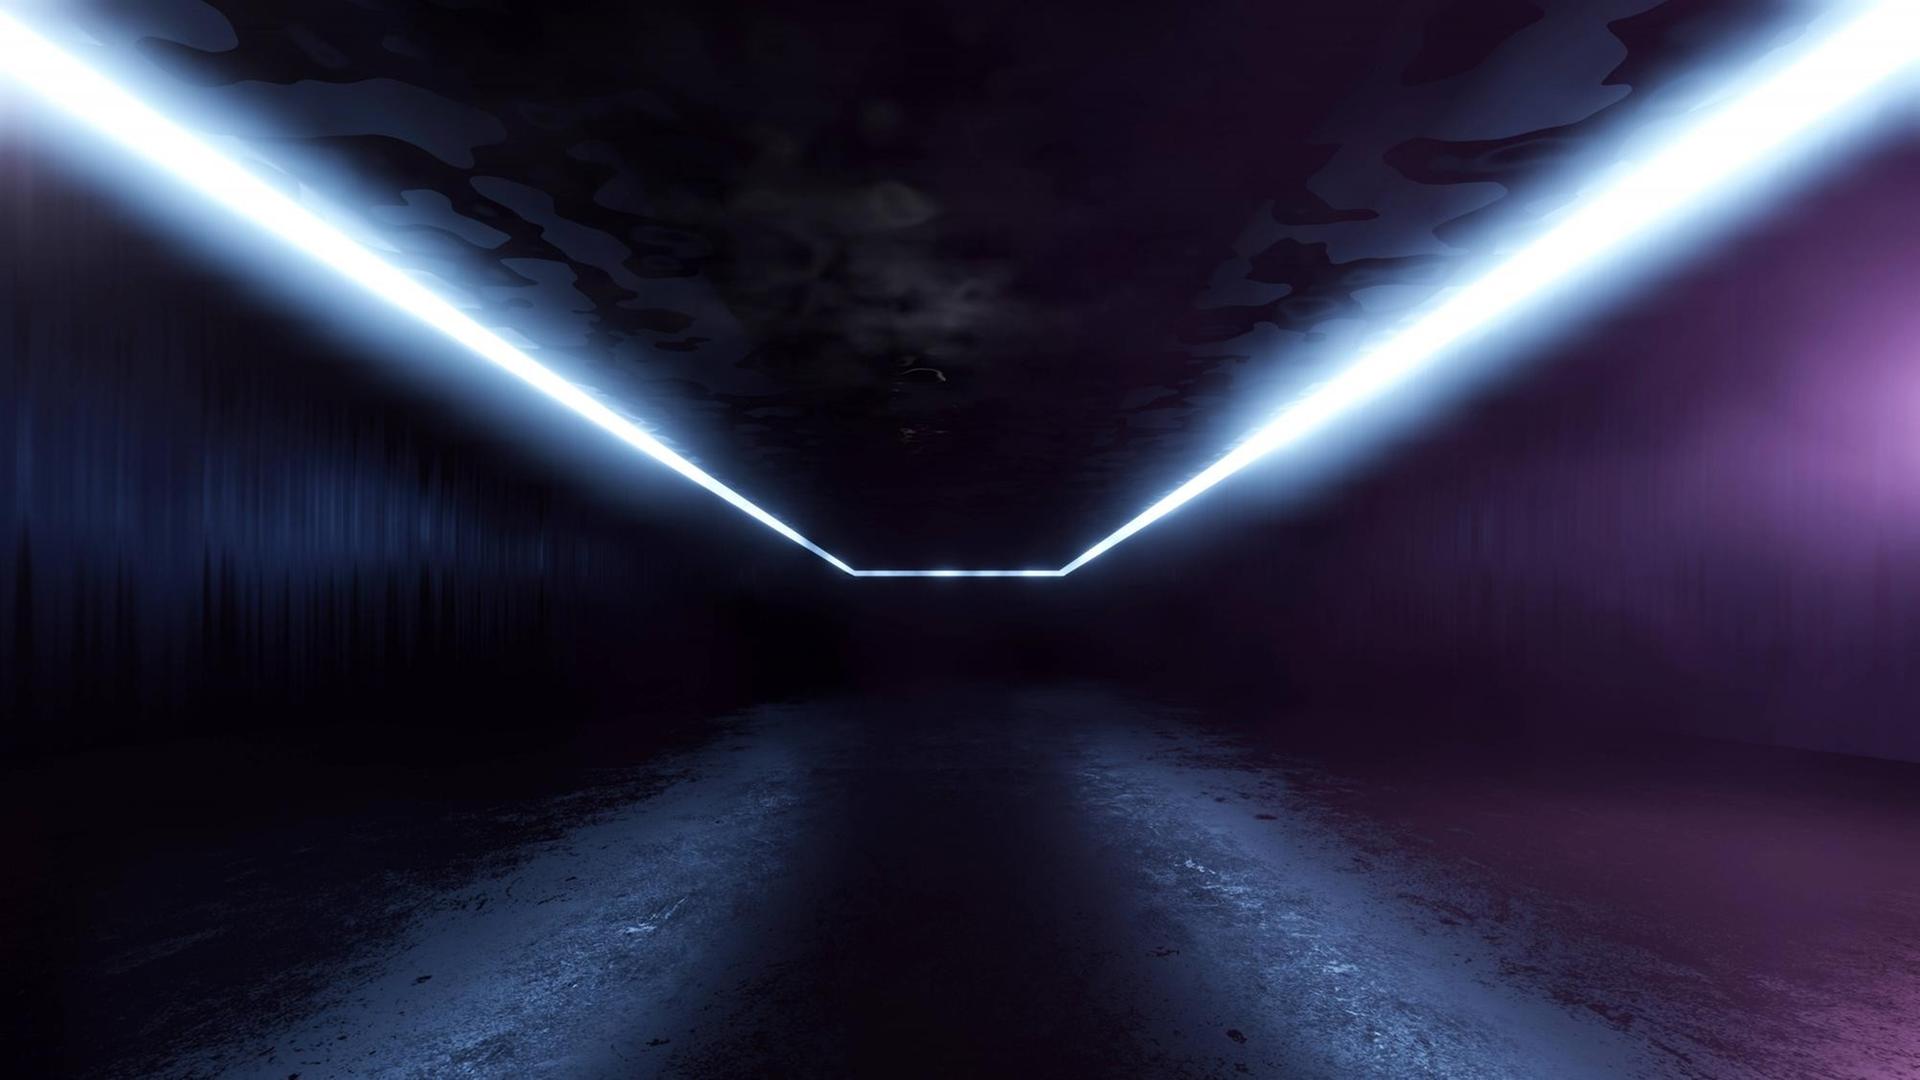 Ein futuristischer dunkler Korridor in den von den Rändern her Licht fällt